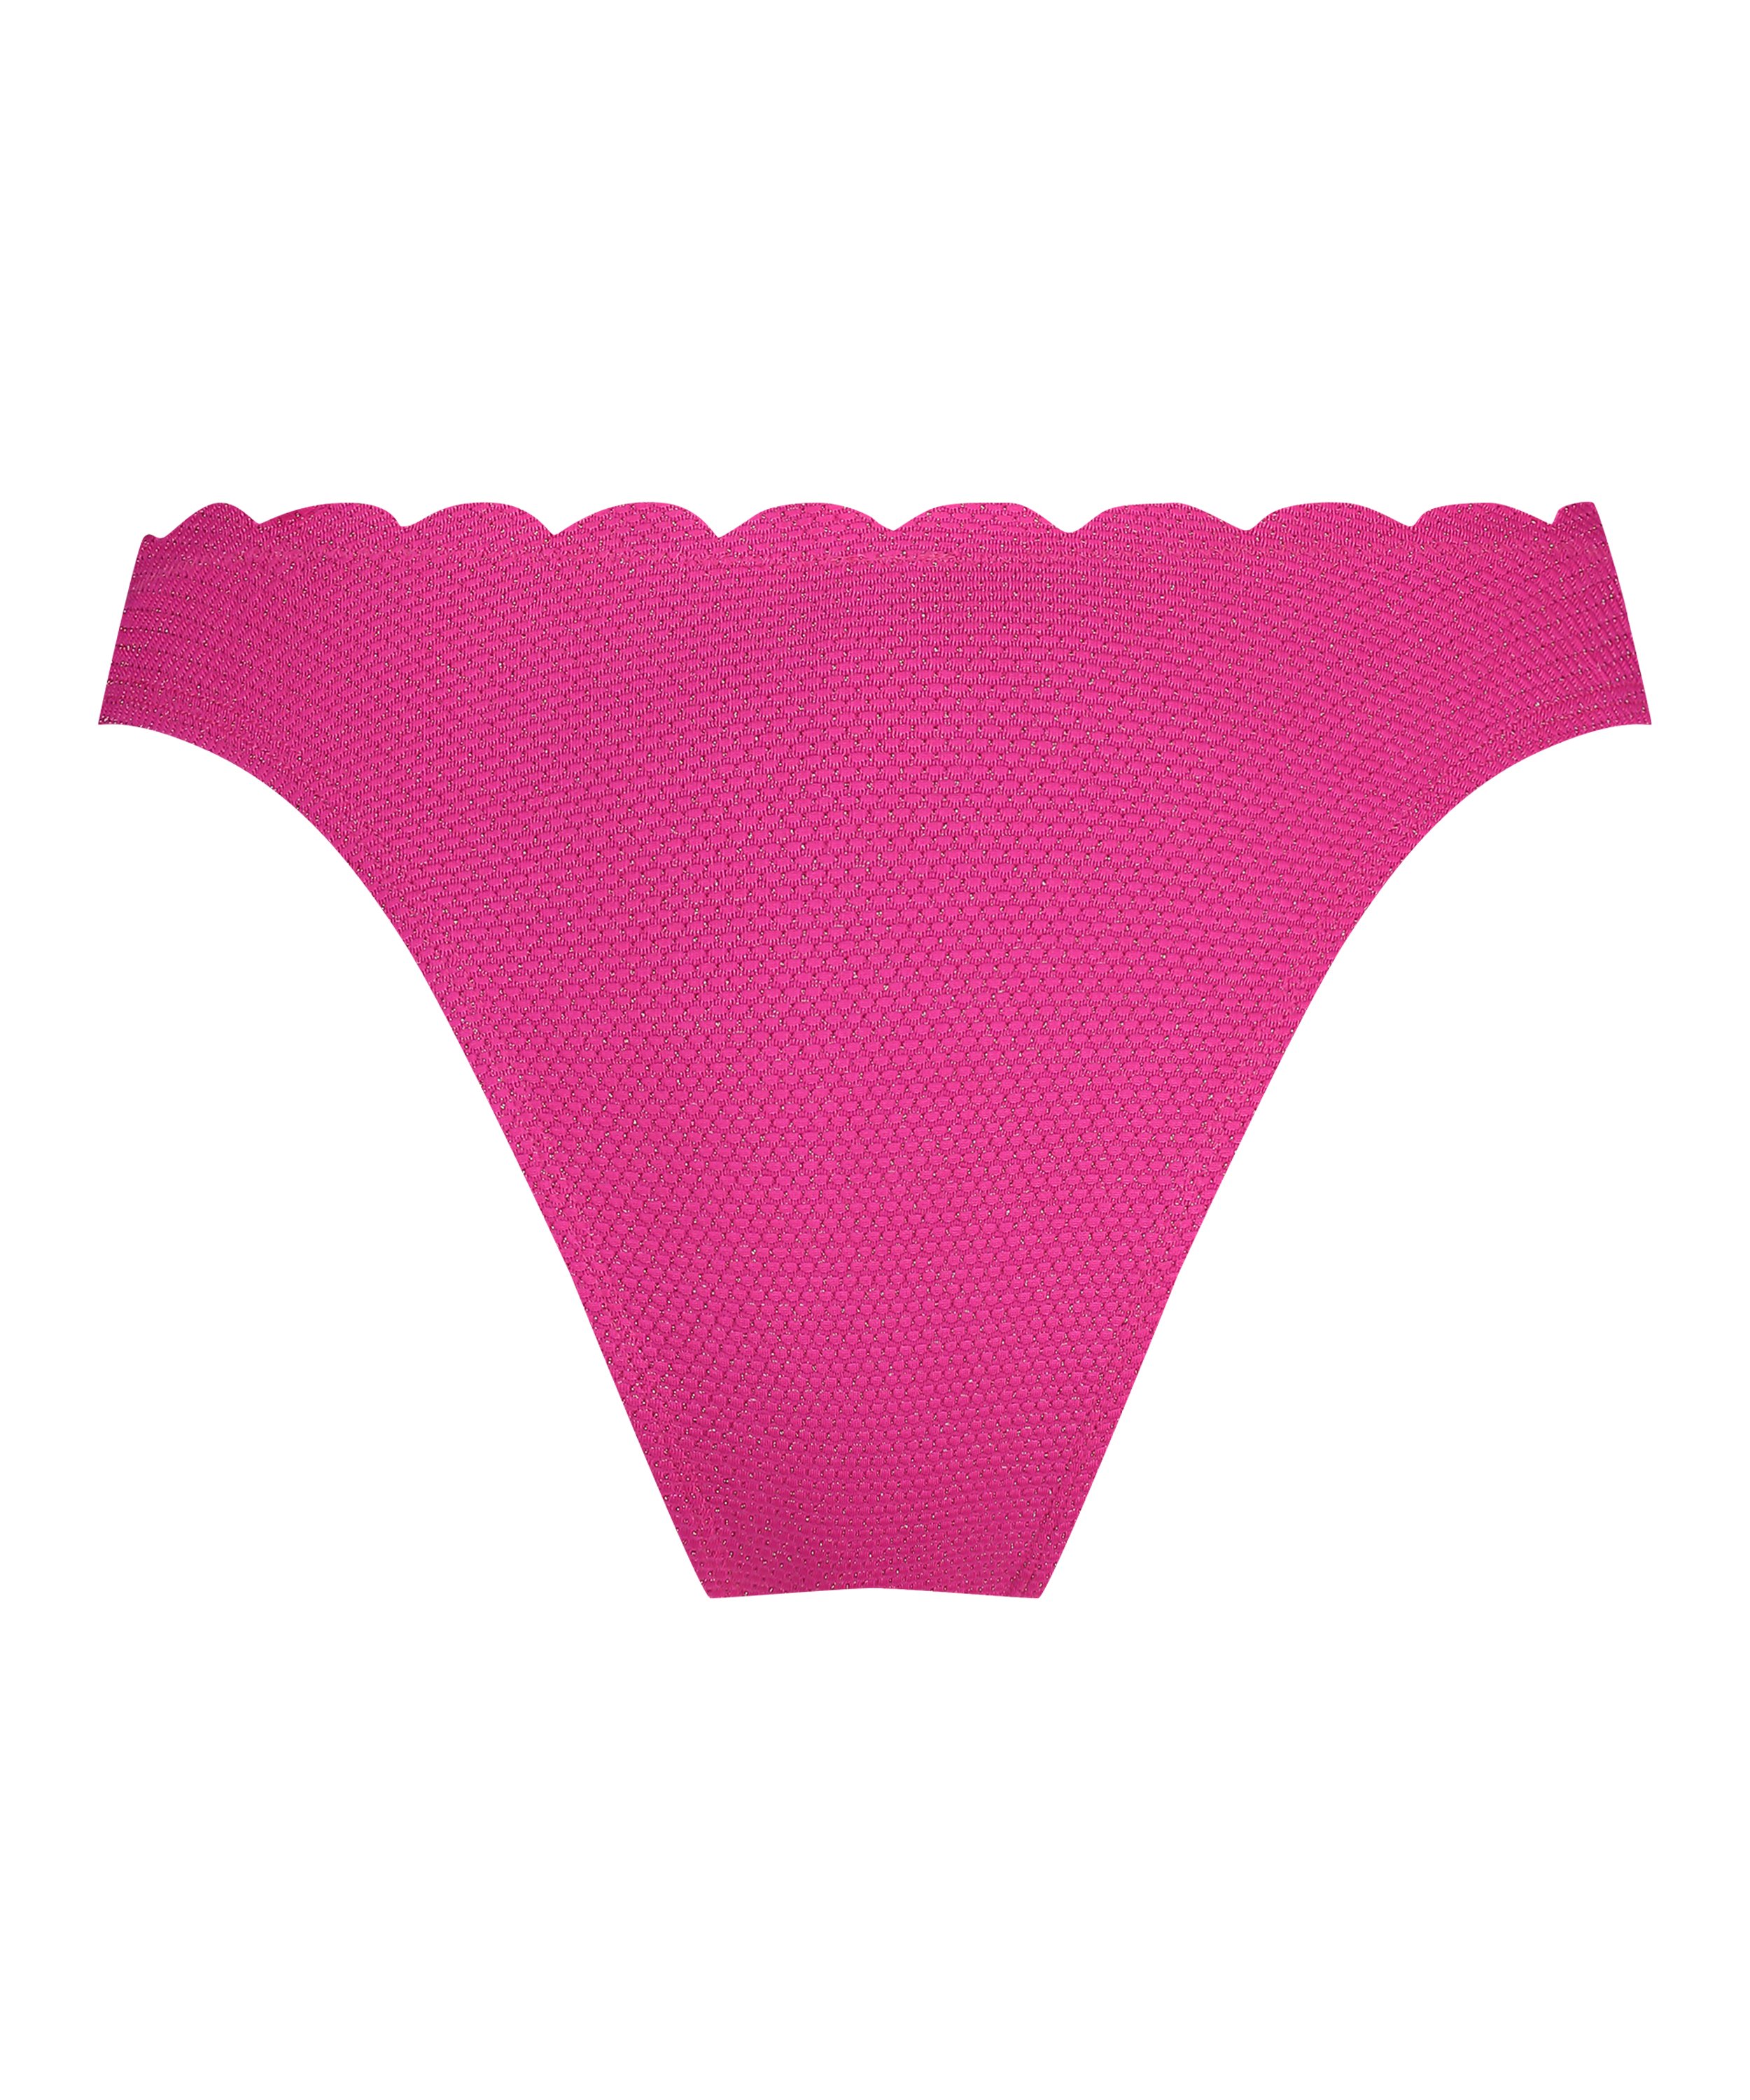 Bikini Slip mit hohem Beinausschnitt Lurex Scallop, Rosa, main